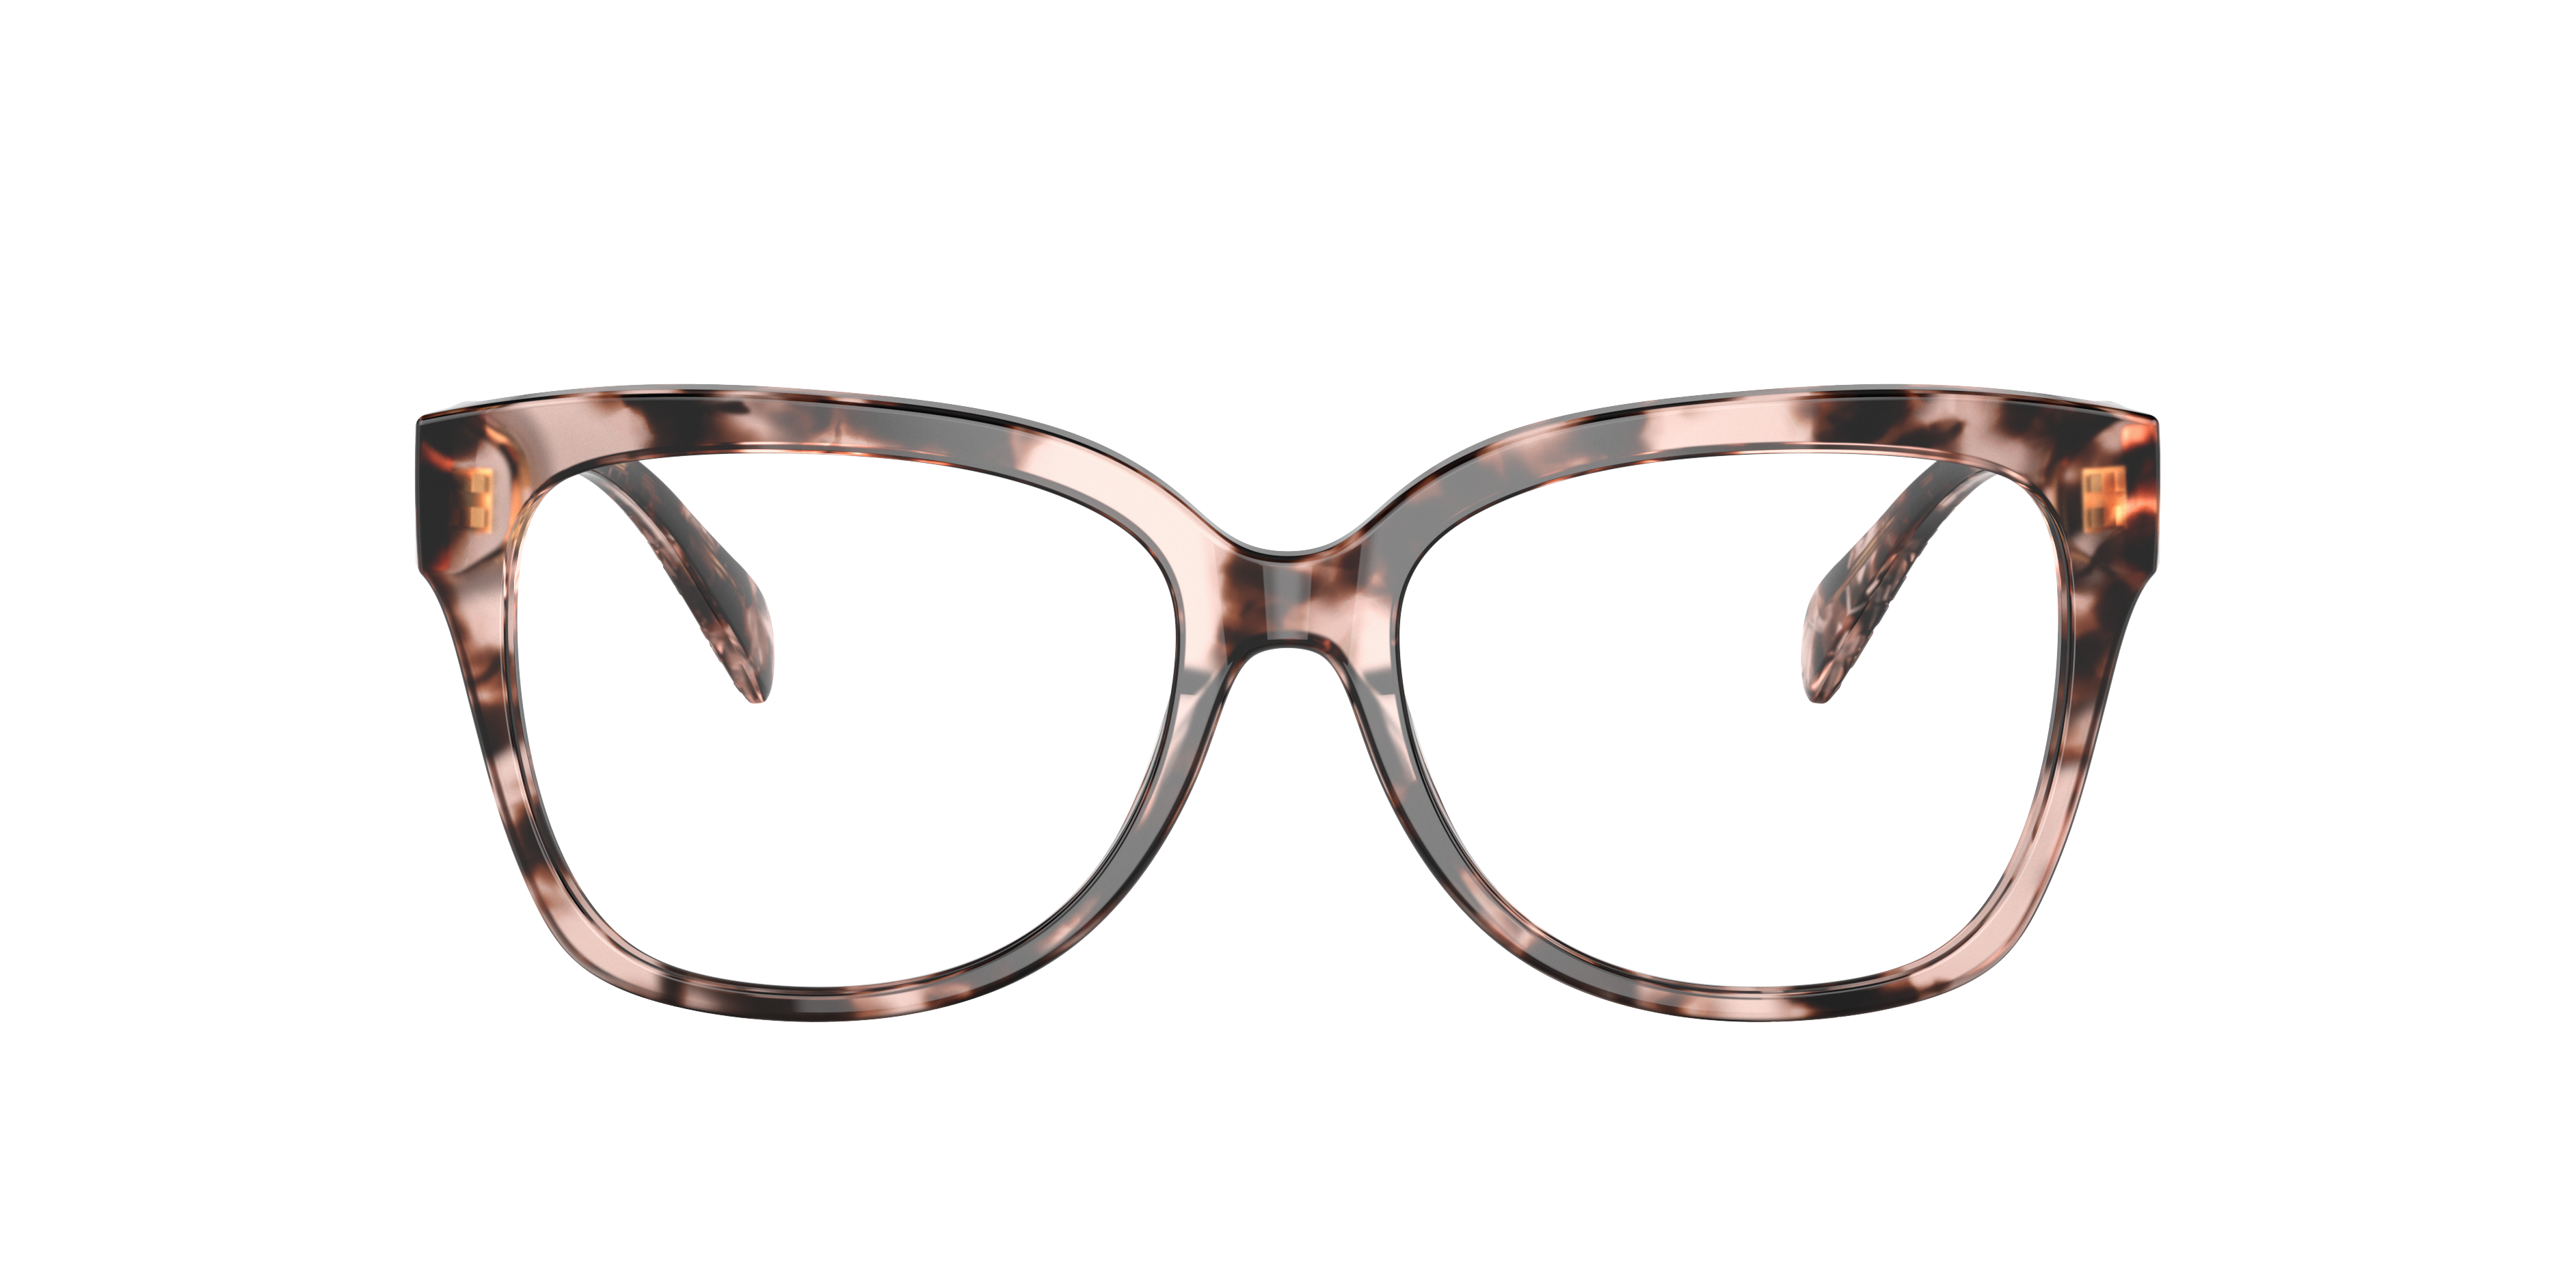 8 Best Michael Kors glasses ideas  michael kors glasses glasses  eyeglasses